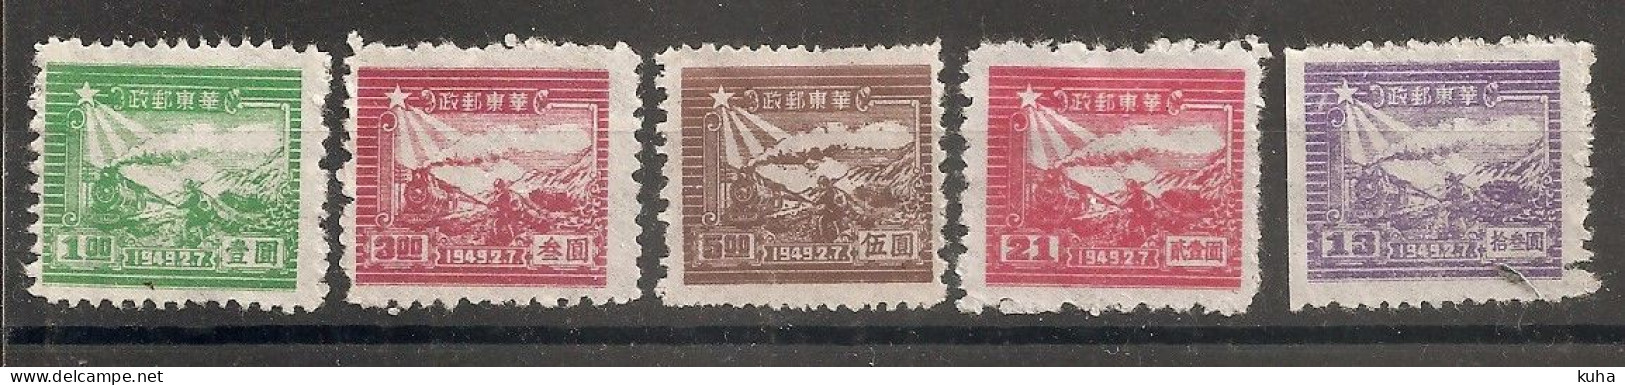 China Chine 1949 North China  MH & MNH - Cina Del Nord 1949-50